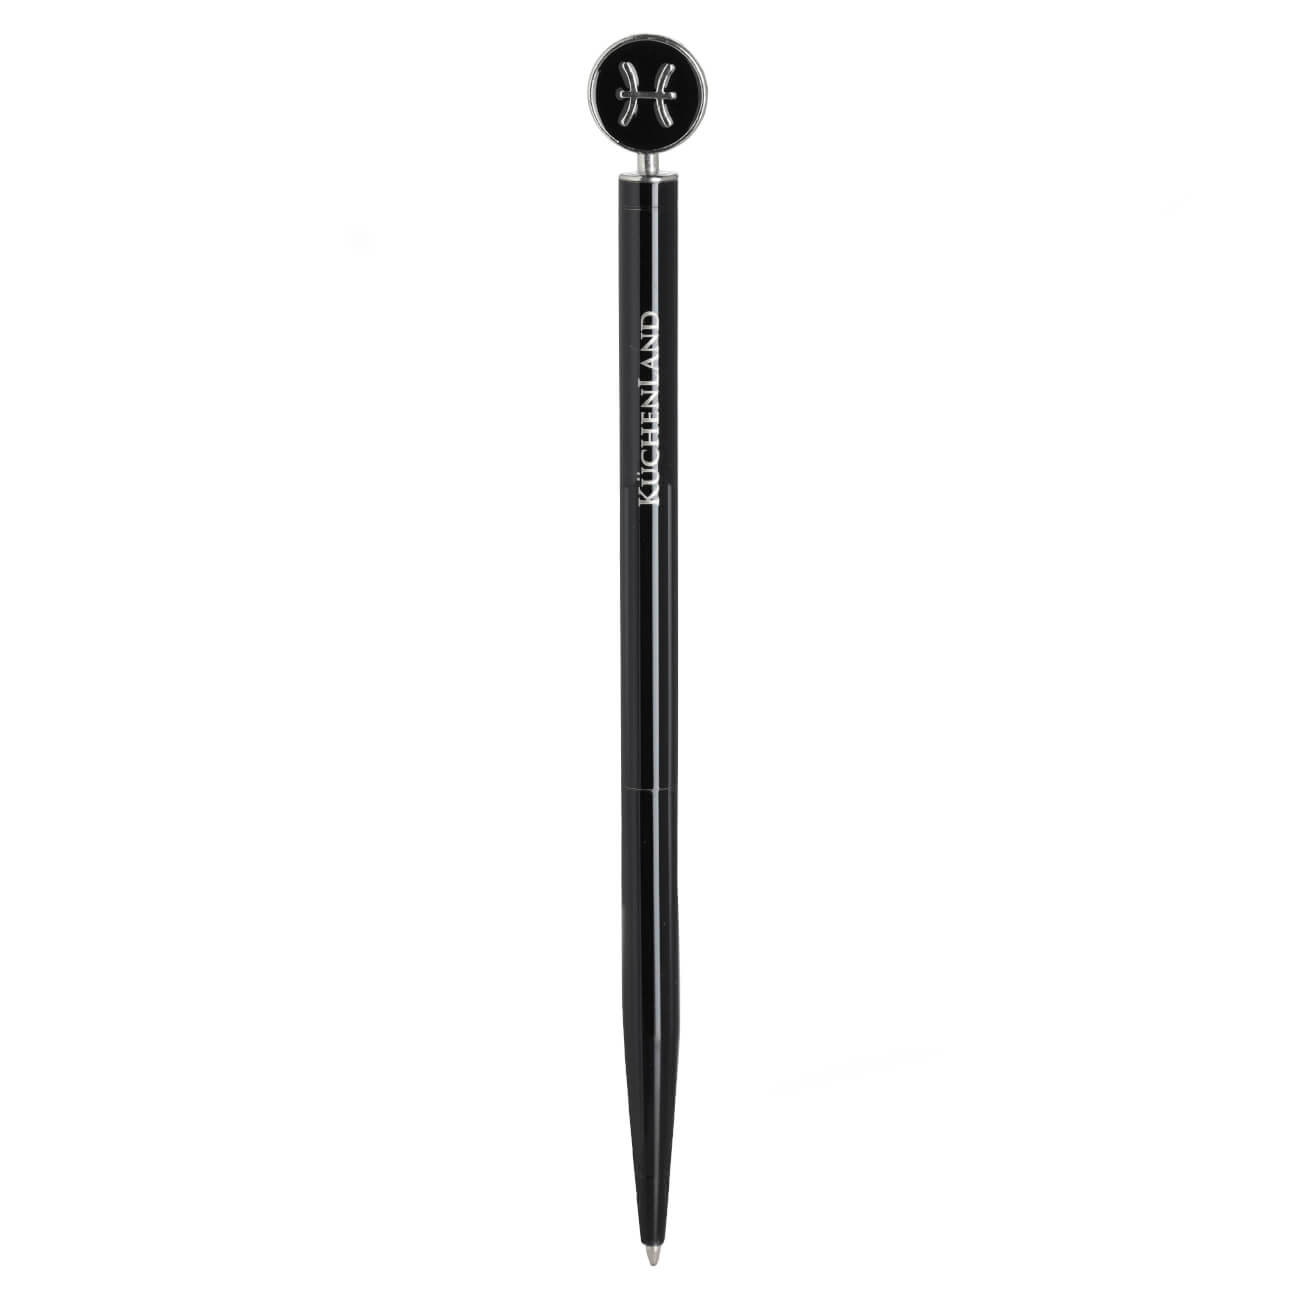 Ручка шариковая, 15 см, с фигуркой, сталь, черно-серебристая, Рыбы, Zodiac dueto gun ручка стилус